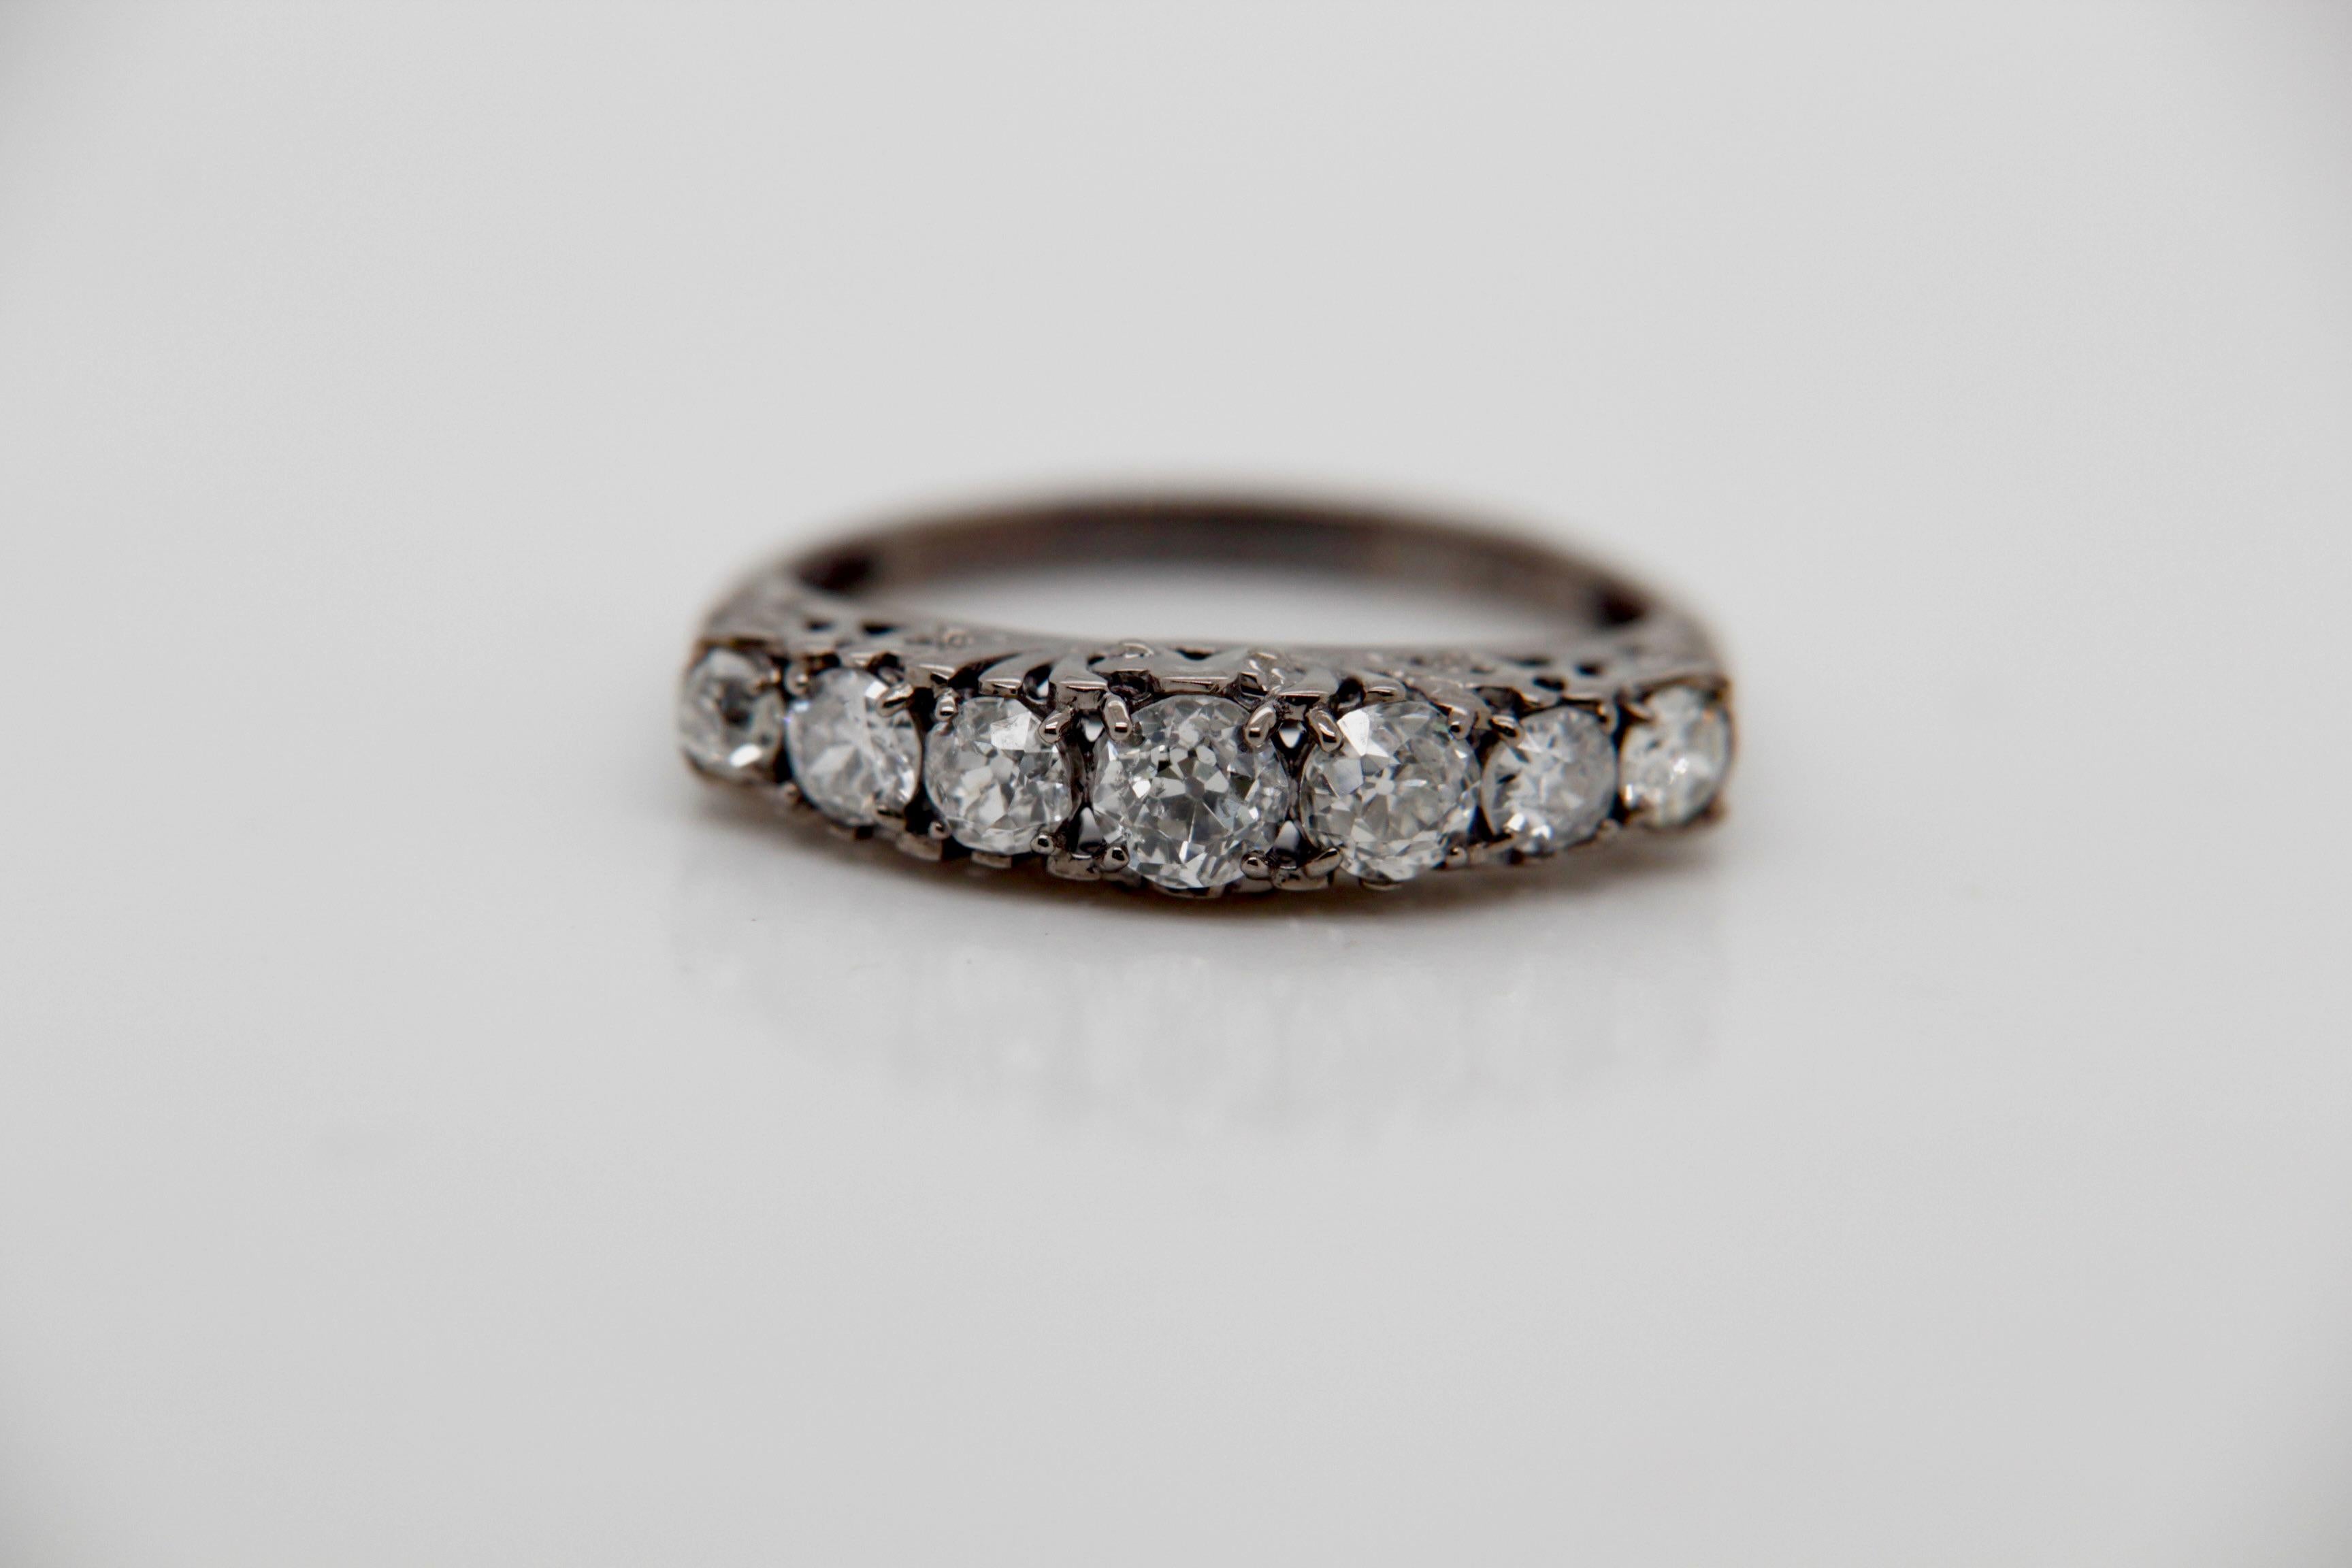 Découvrez l'allure intemporelle de la bague Natural Old Mine Diamond Ring by REWA, un chef-d'œuvre moderne et vintage qui rend hommage au design exquis des bijoux de l'ère victorienne. Cette magnifique bague met en valeur un total de sept diamants